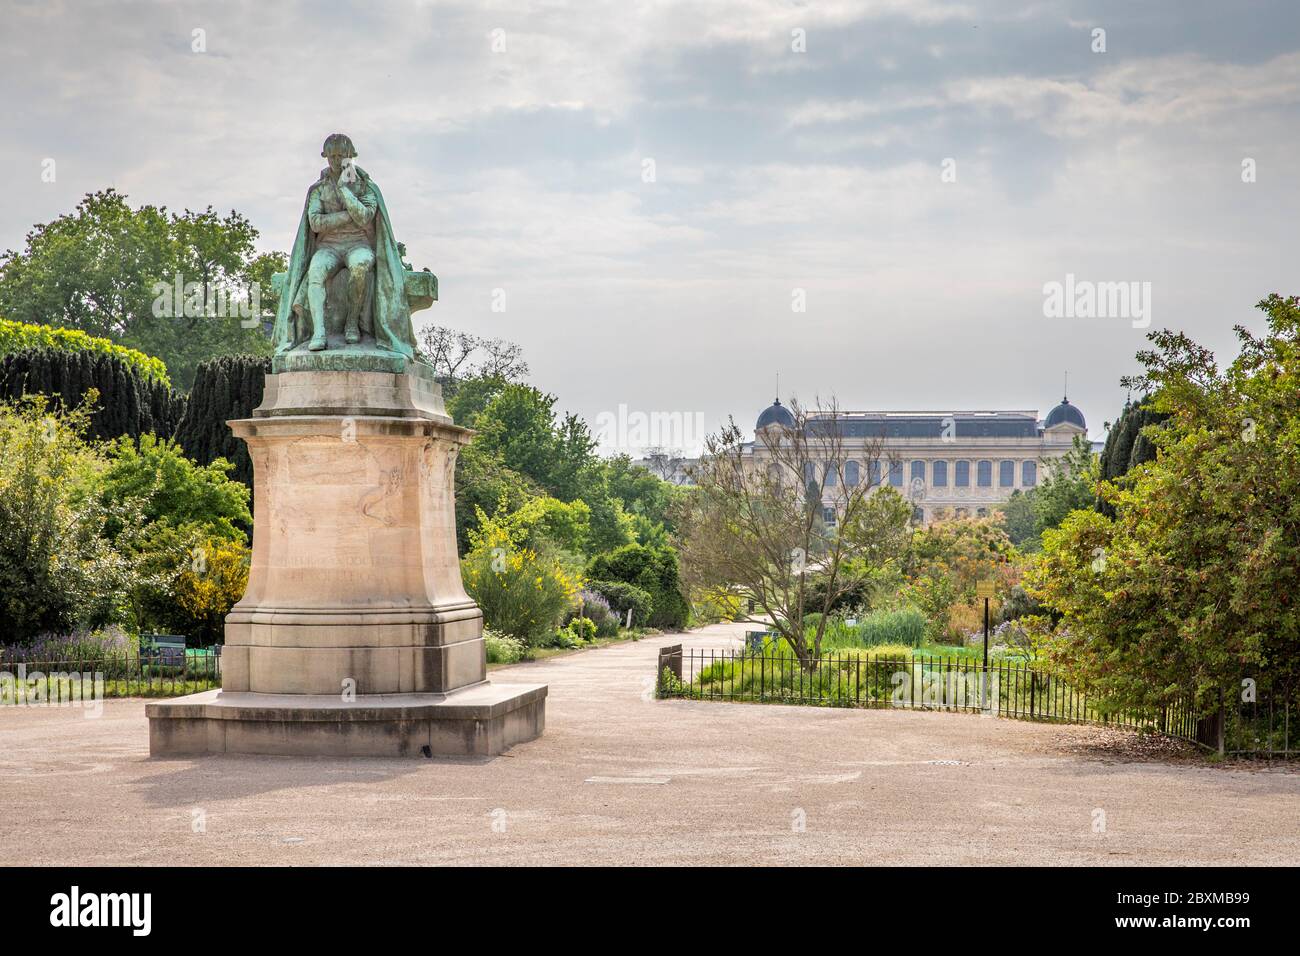 Parigi, Francia - 25 aprile 2020: Il Jardin des plantes (francese per giardino delle piante) è il principale giardino botanico della Francia. Situato a Parigi, IT Foto Stock